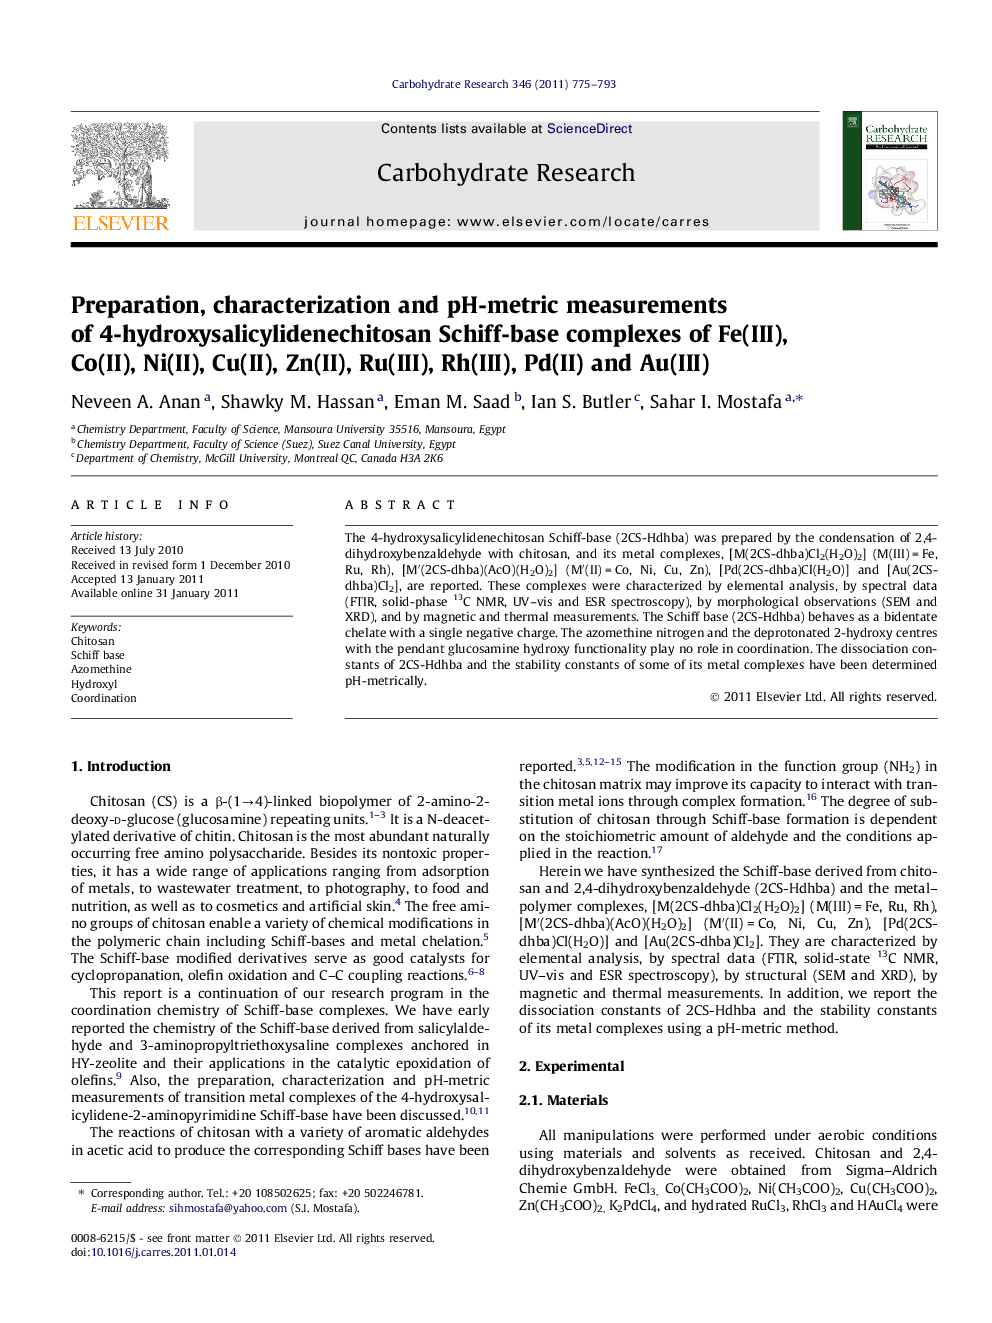 Preparation, characterization and pH-metric measurements of 4-hydroxysalicylidenechitosan Schiff-base complexes of Fe(III), Co(II), Ni(II), Cu(II), Zn(II), Ru(III), Rh(III), Pd(II) and Au(III)